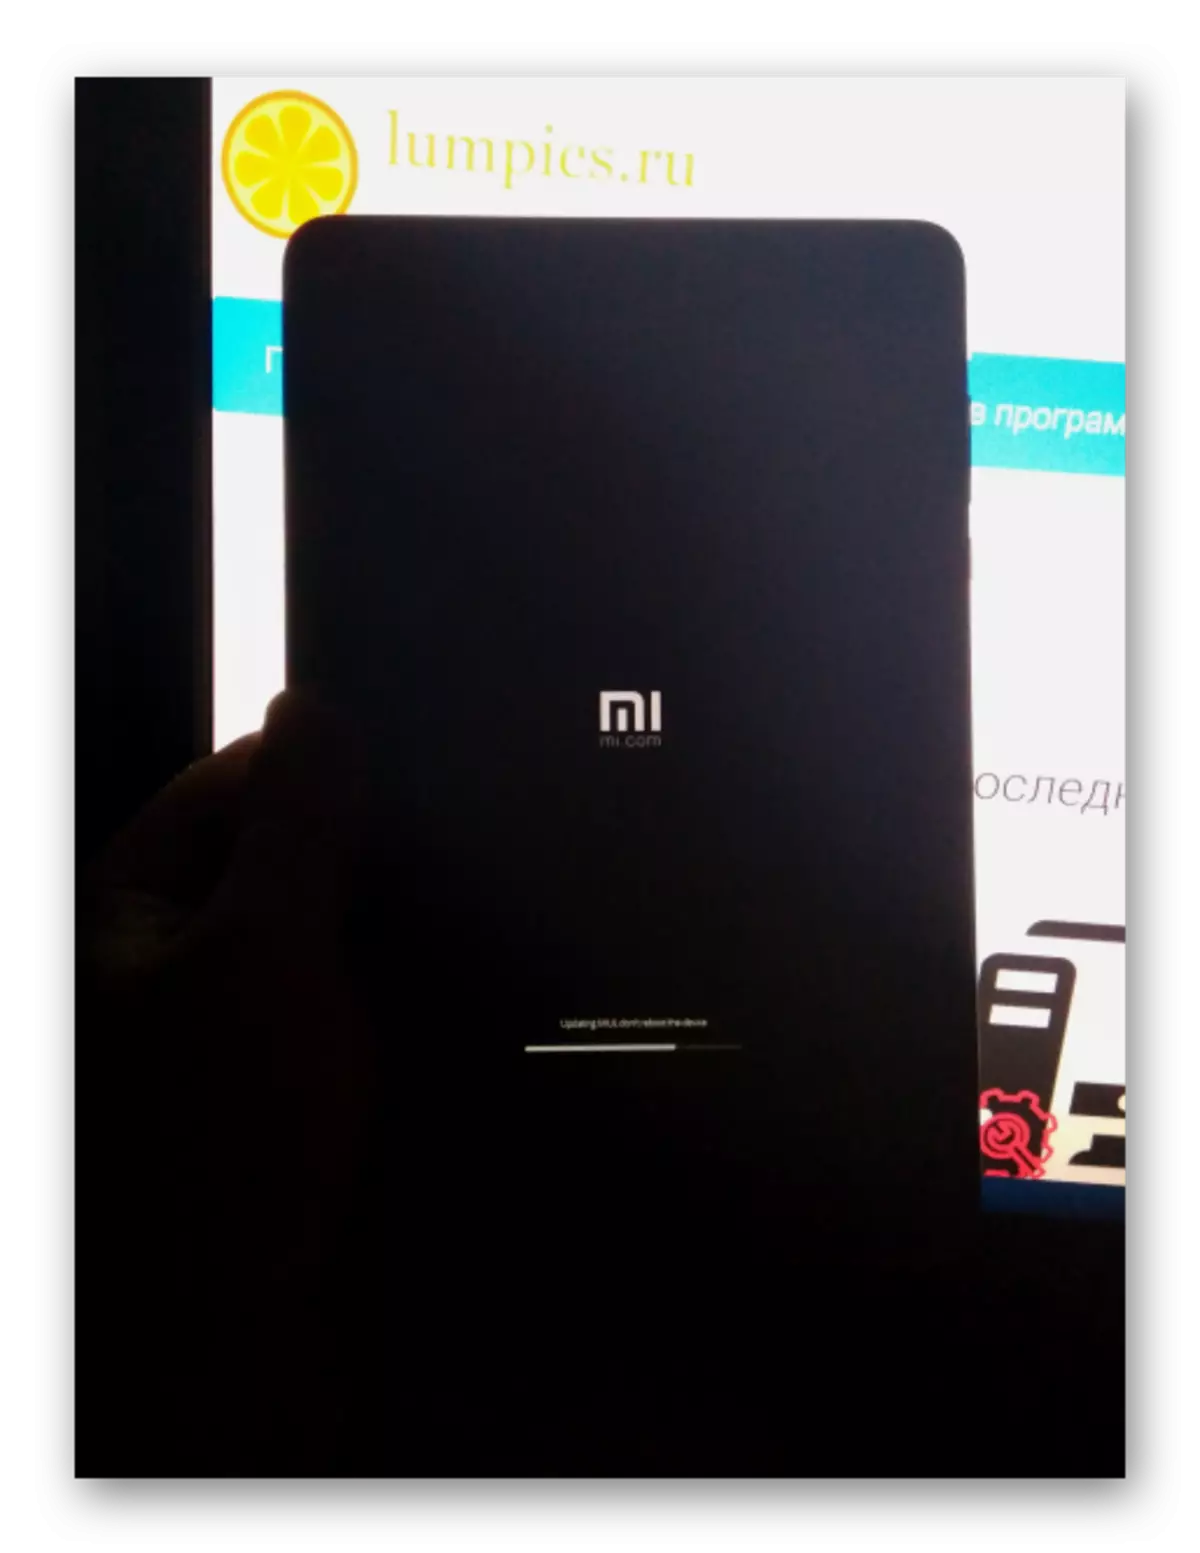 Xiaomi MIPAD 2 PROGRESS INSTALACIÓN DE FIRMWARE EN PANTALLA DEL DISPOSITIVO